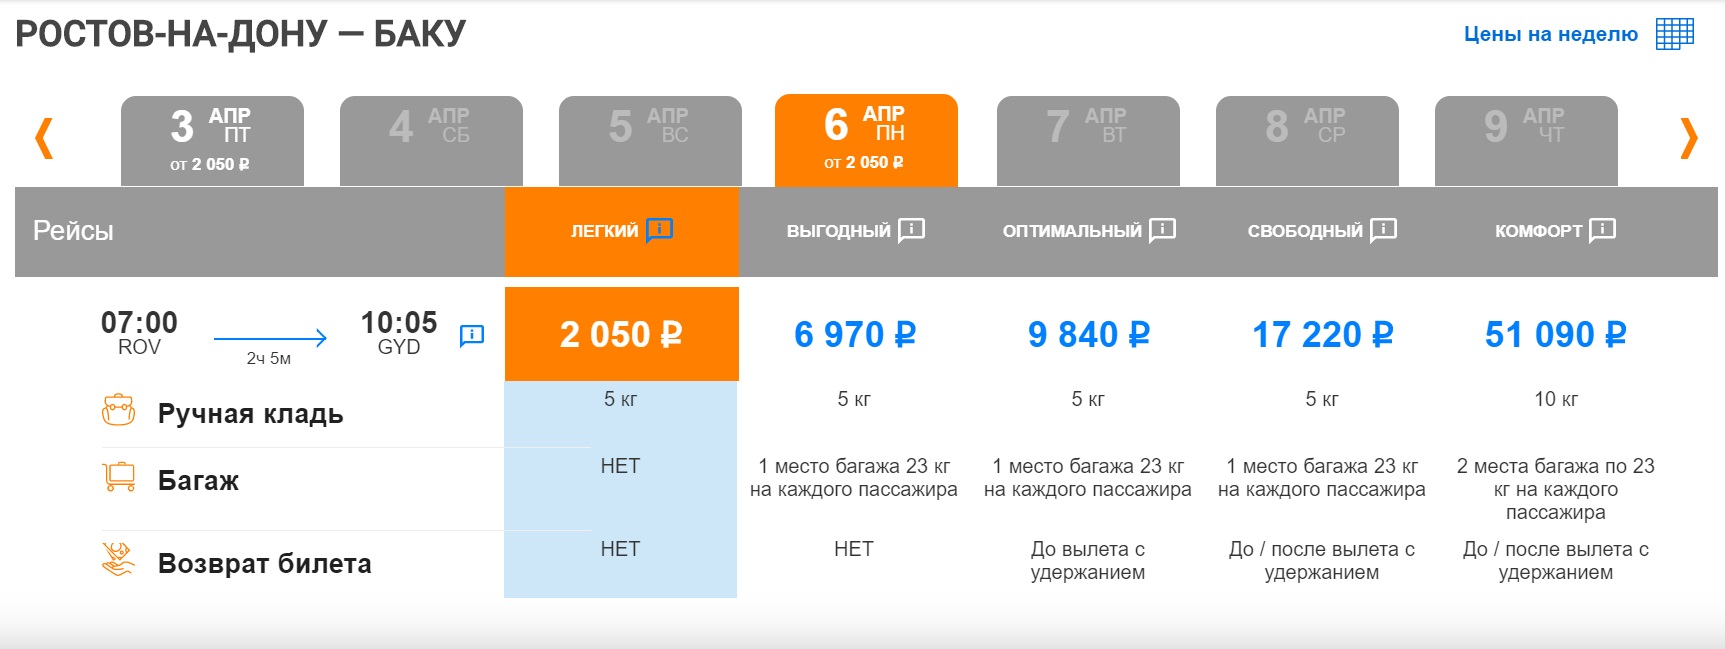 Псков сочи авиабилеты прямые рейсы цена азимут купить авиабилеты в лениногорске